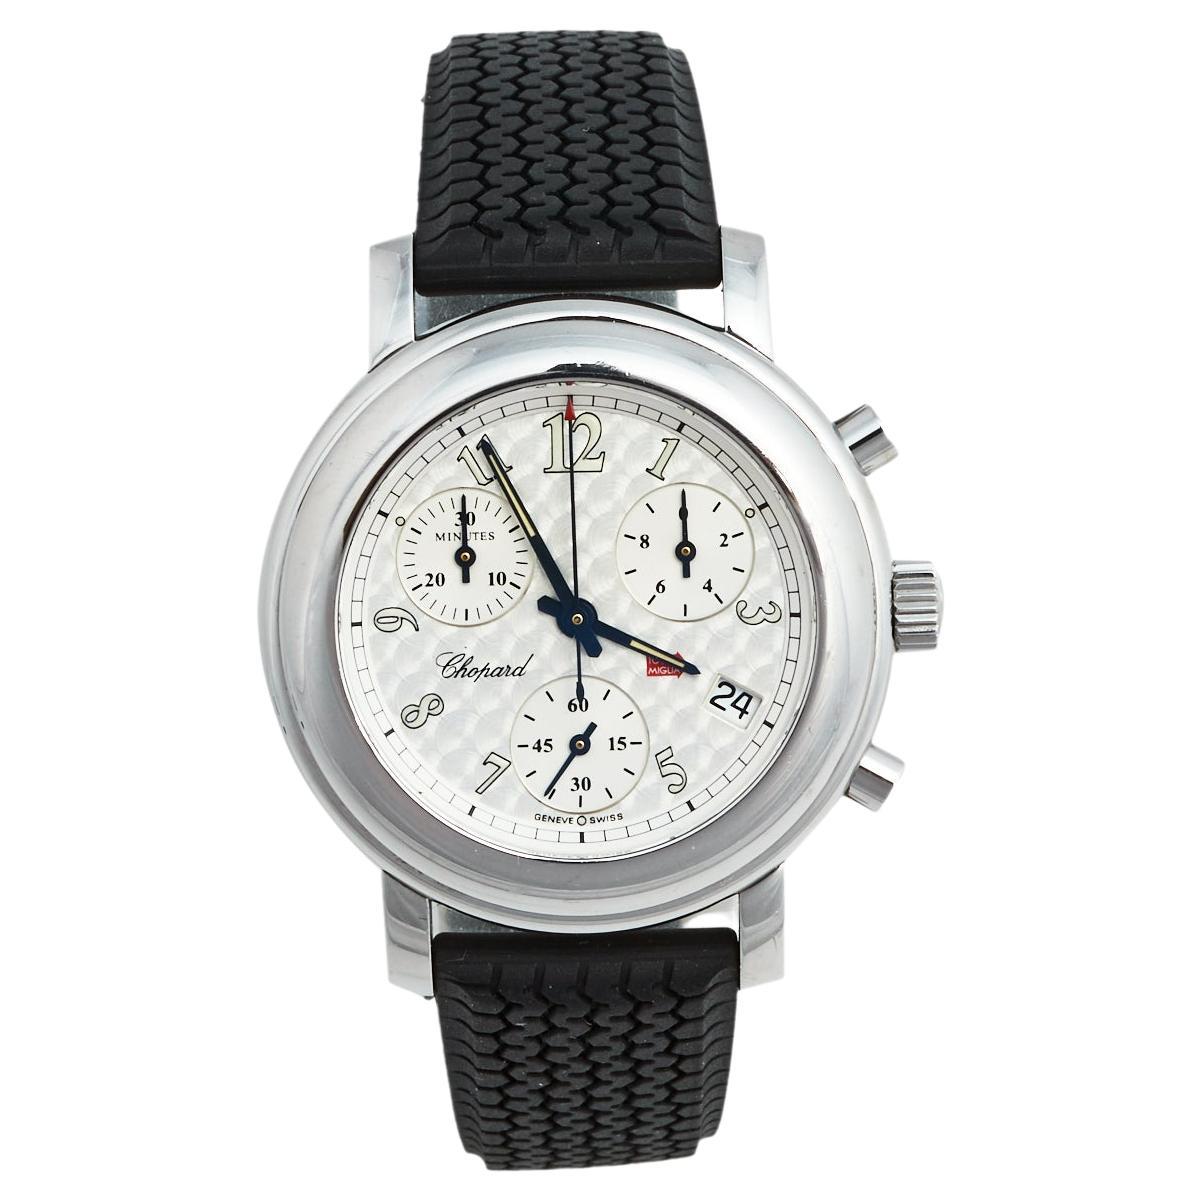 Chopard Silver Stainless Steel Rubber Mille Miglia 8900 Women's Wristwatch 33 mm